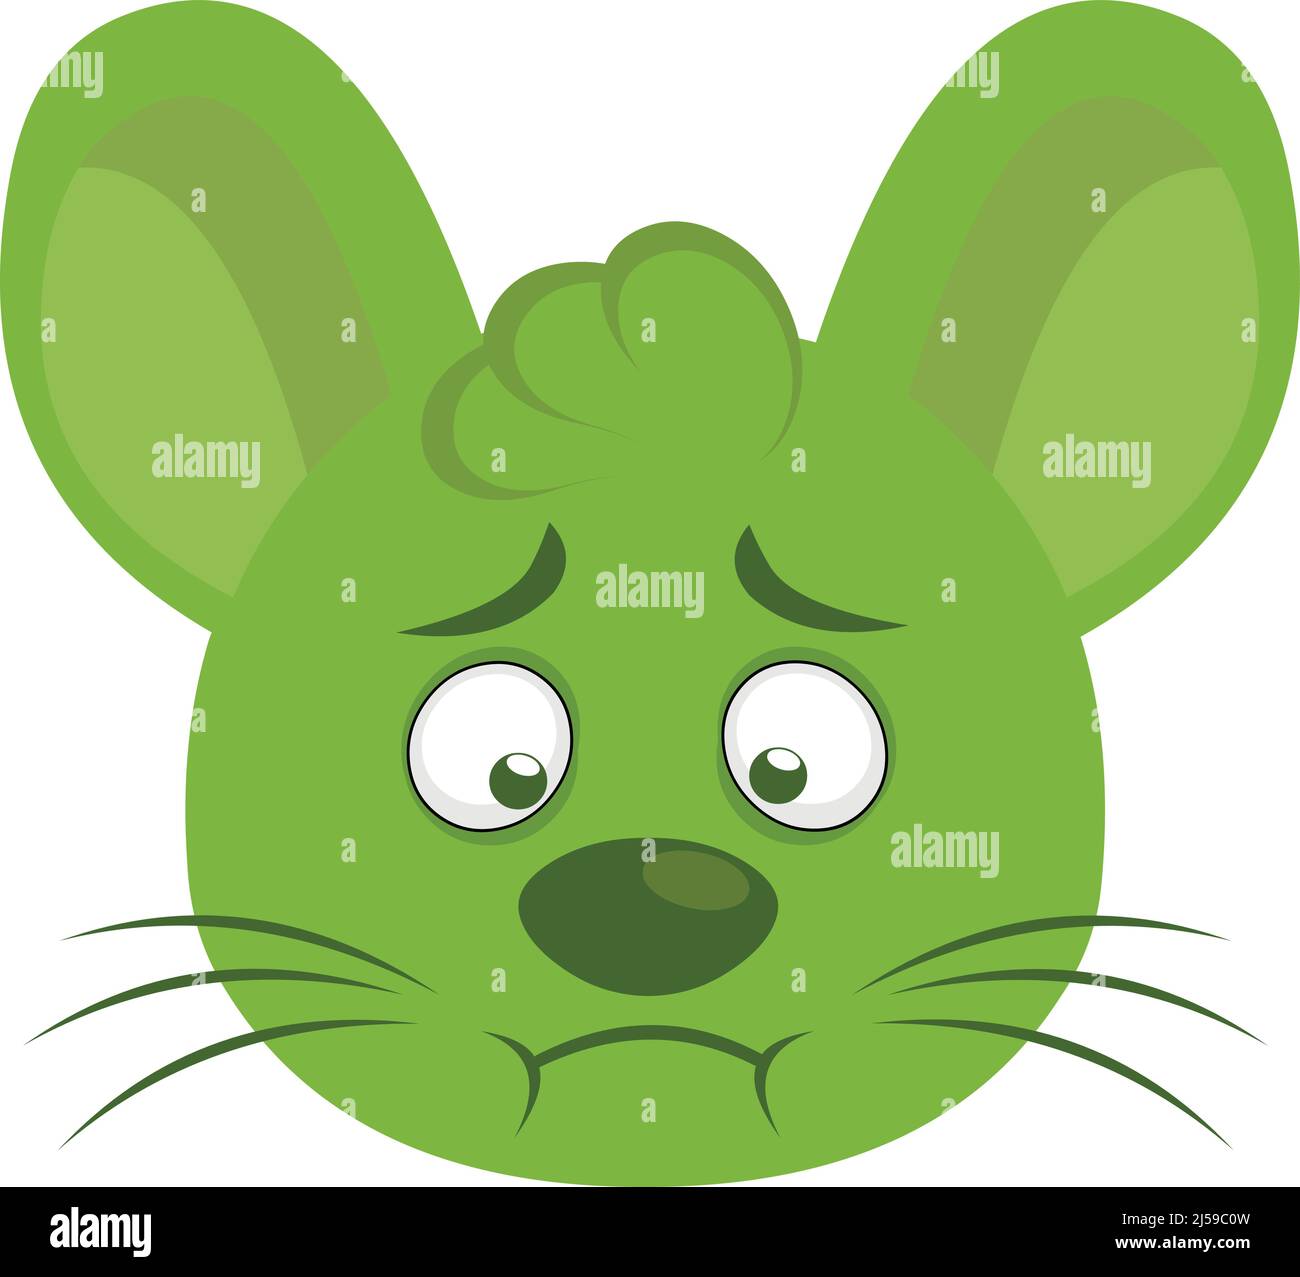 Vektor-Illustration von Cartoon-Maus Gesicht mit einer grünen Farbe von Übelkeit Stock Vektor